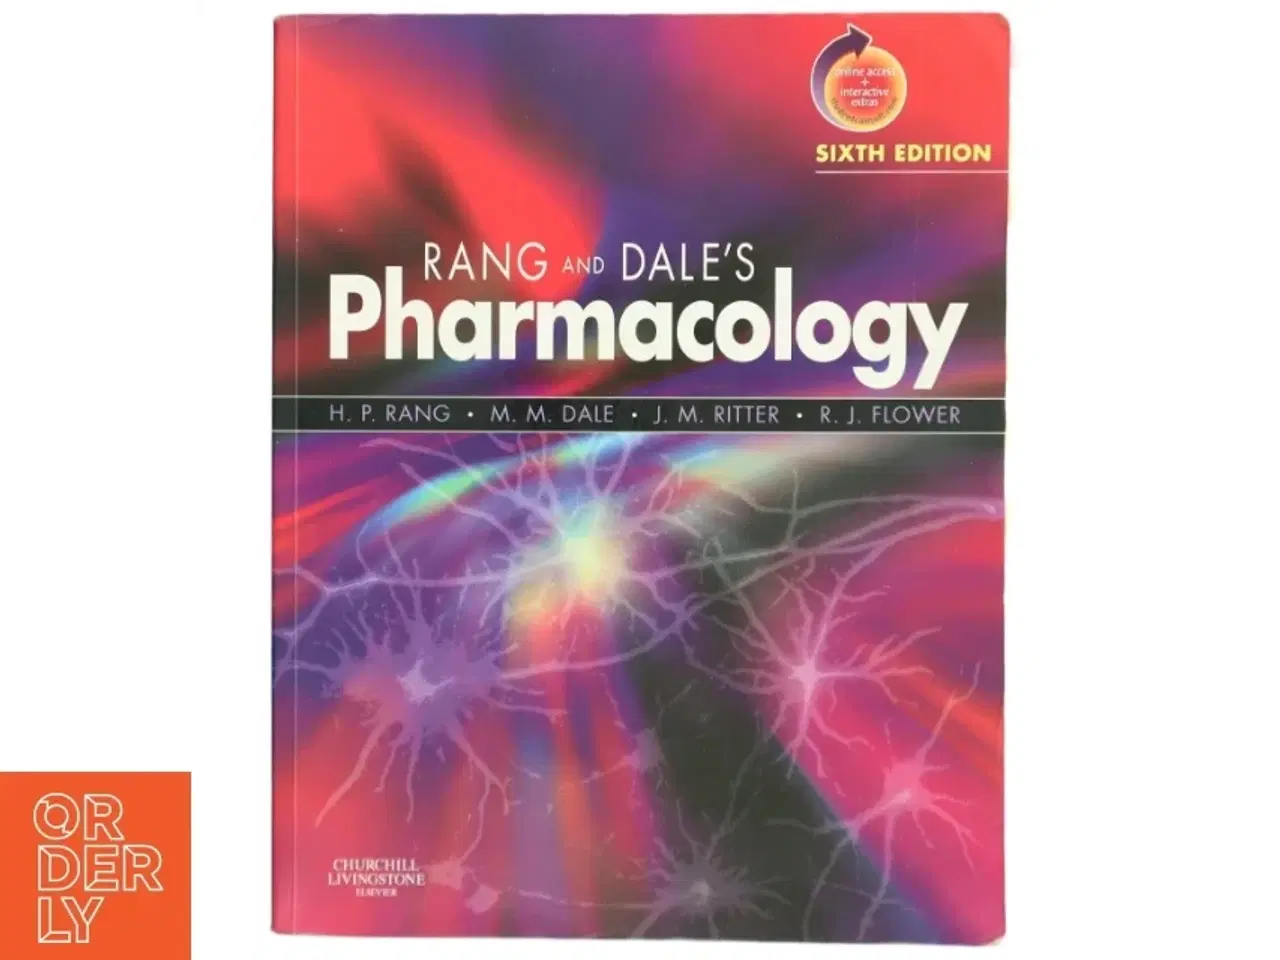 Billede 1 - 'Rang and Dale's pharmacology' (bog)